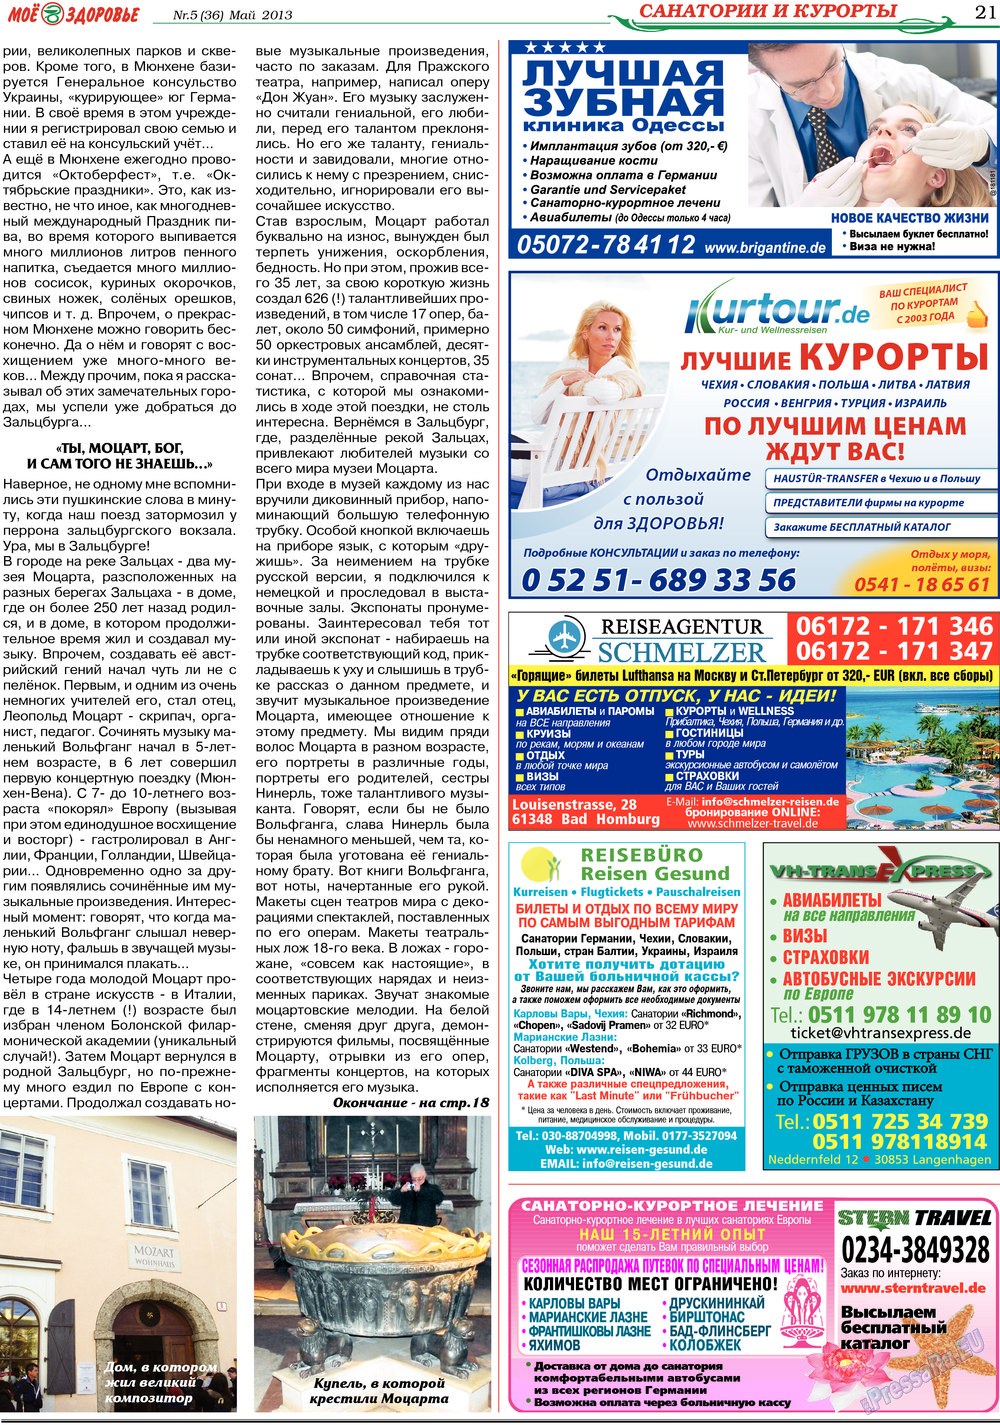 Кругозор, газета. 2013 №5 стр.21